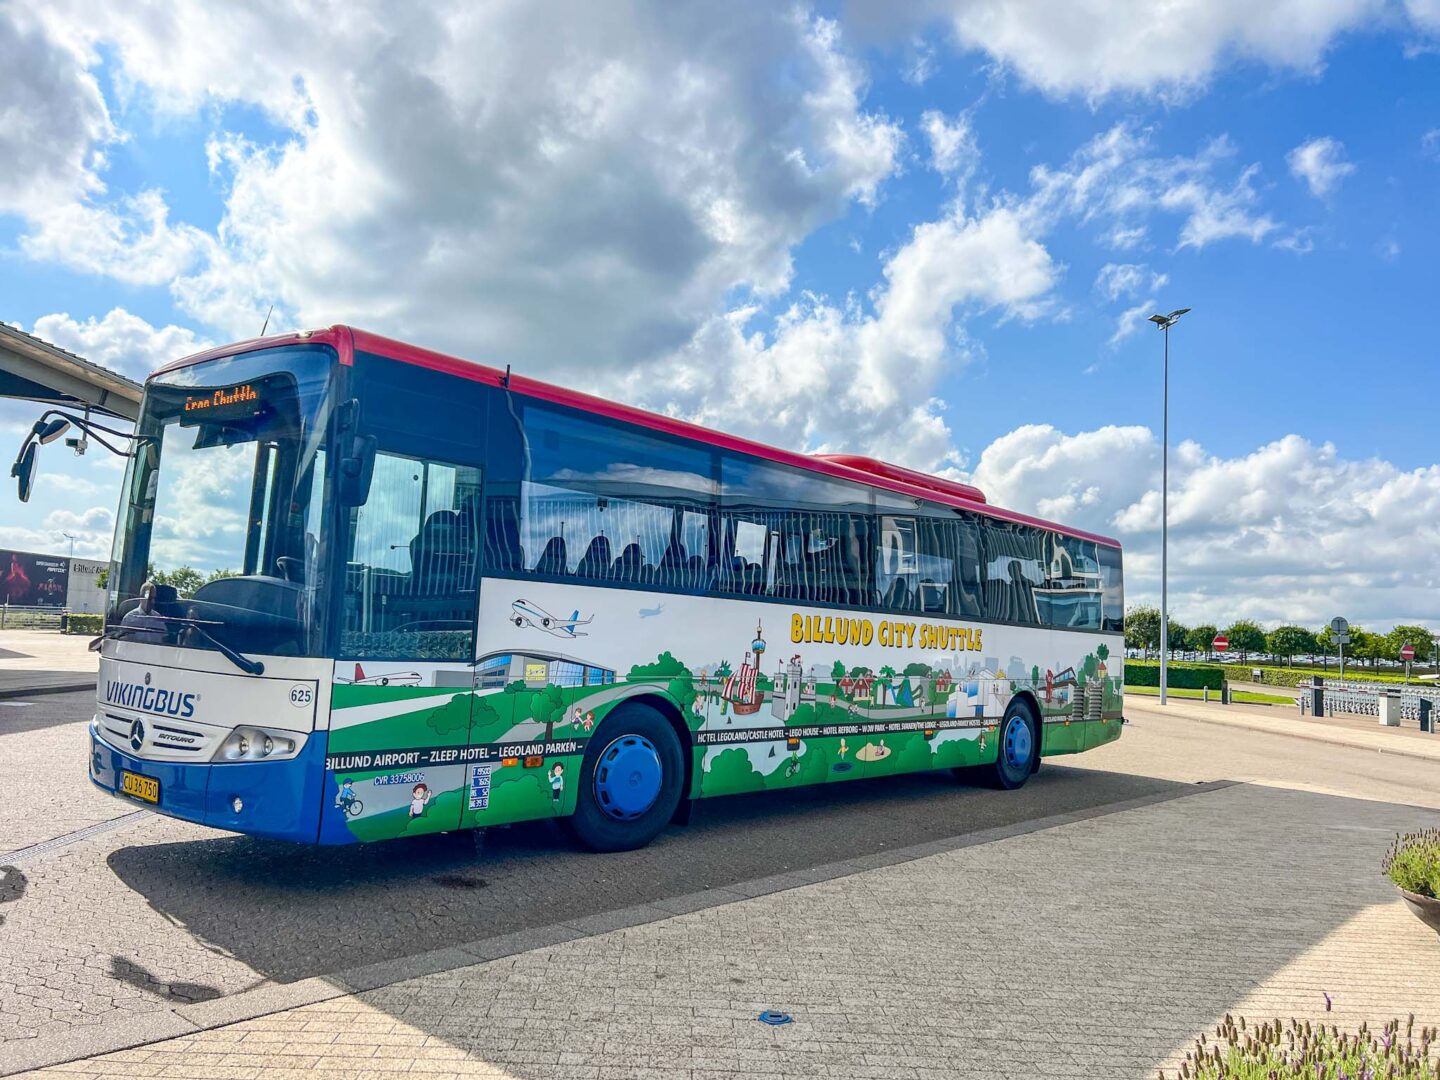 LEGOLAND Billund, free shuttle bus in Billund